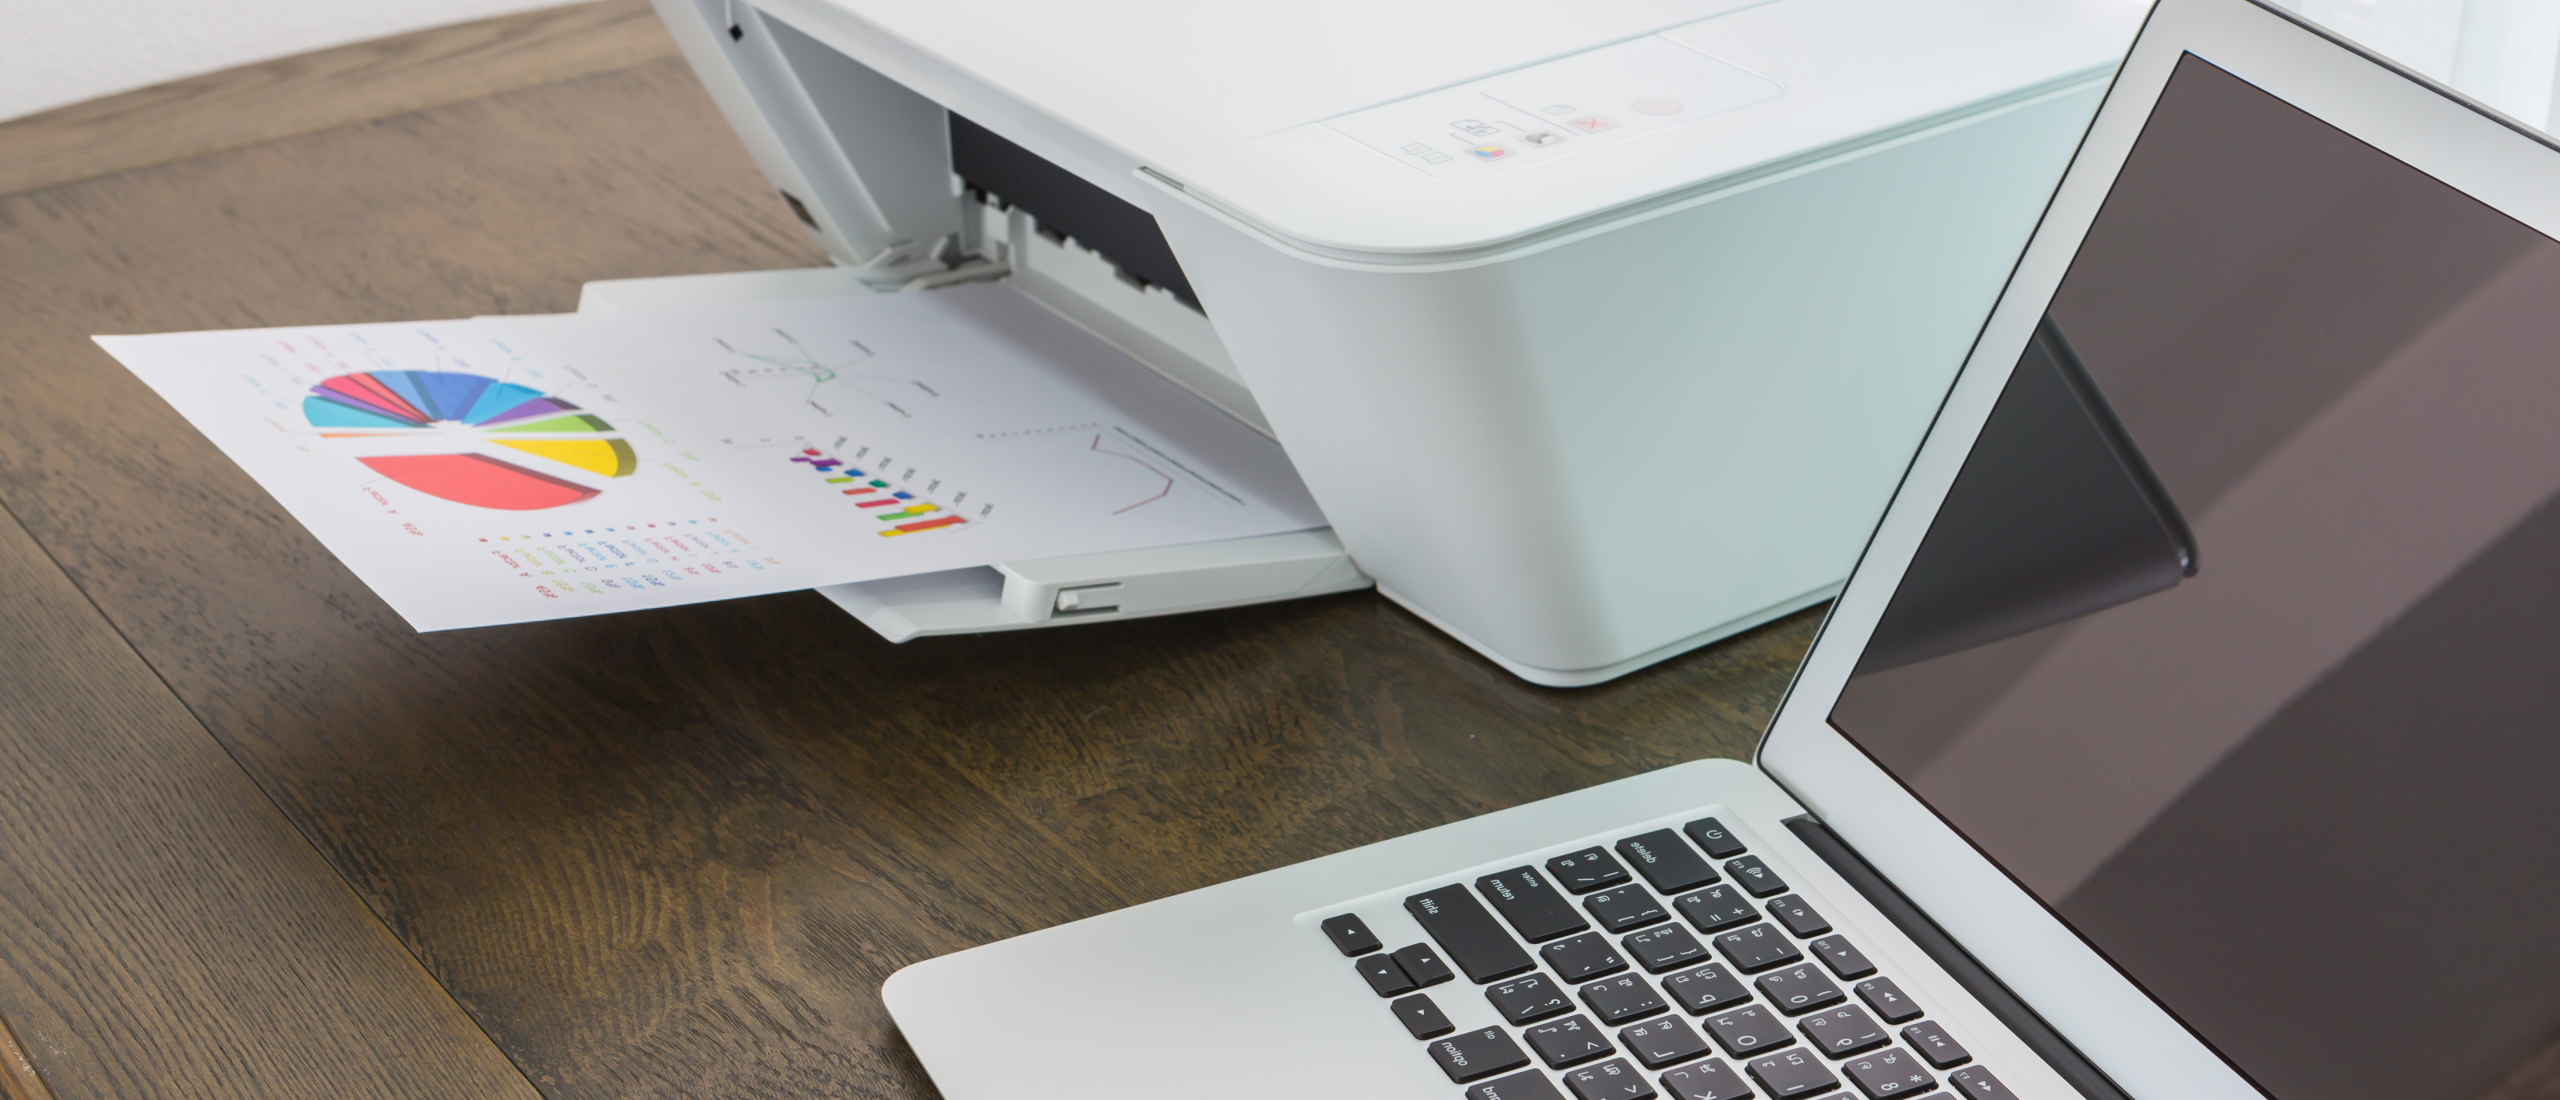 De voordelen van software hp printers: leer er hier alles over